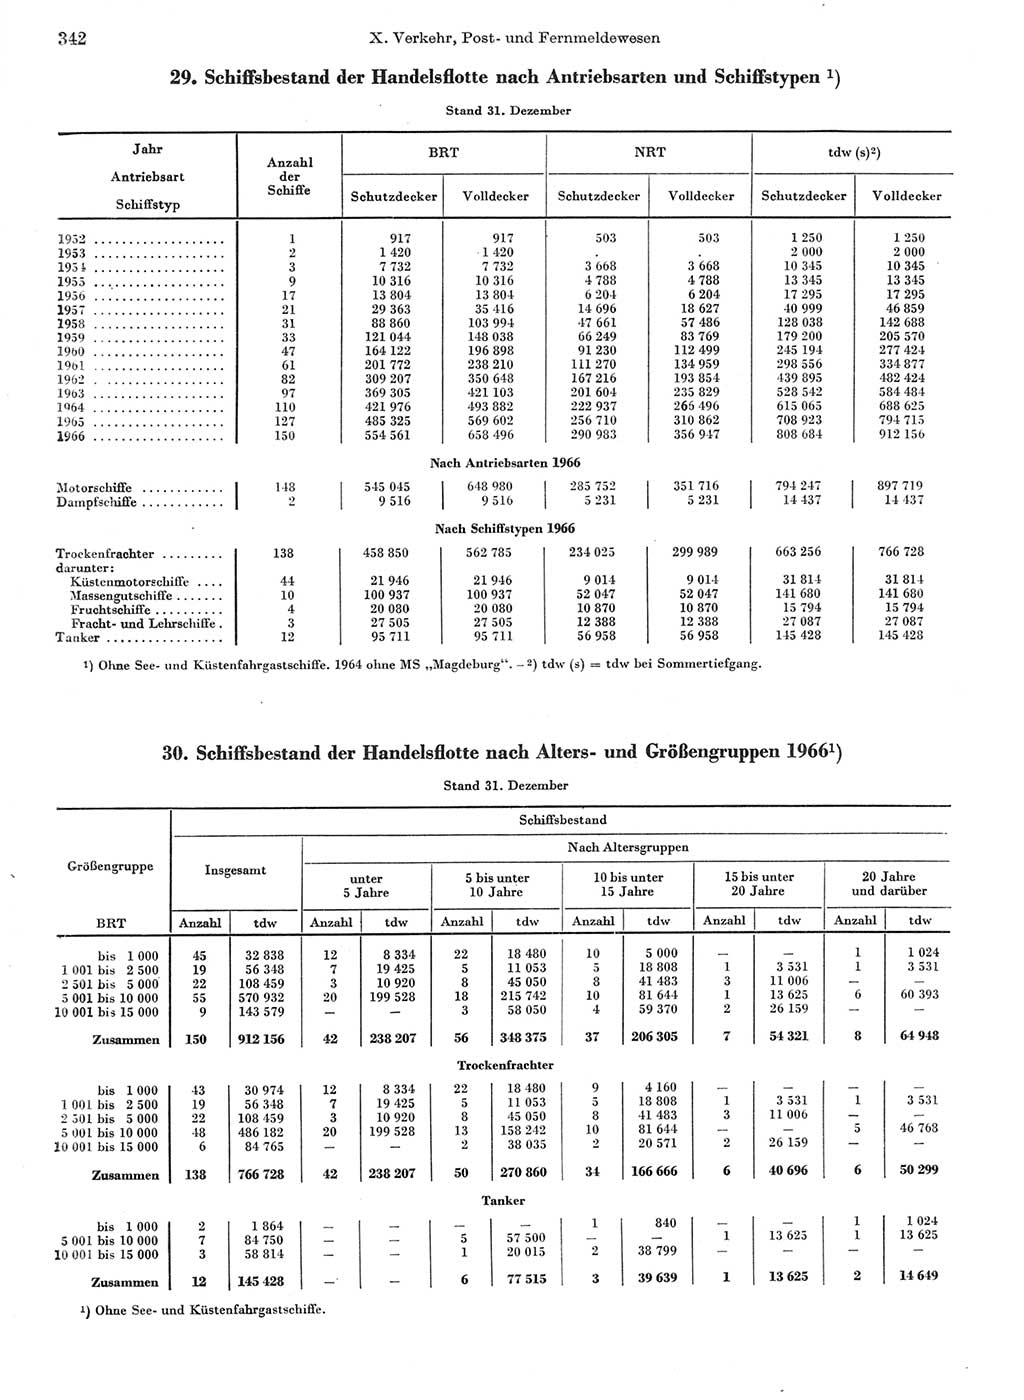 Statistisches Jahrbuch der Deutschen Demokratischen Republik (DDR) 1967, Seite 342 (Stat. Jb. DDR 1967, S. 342)